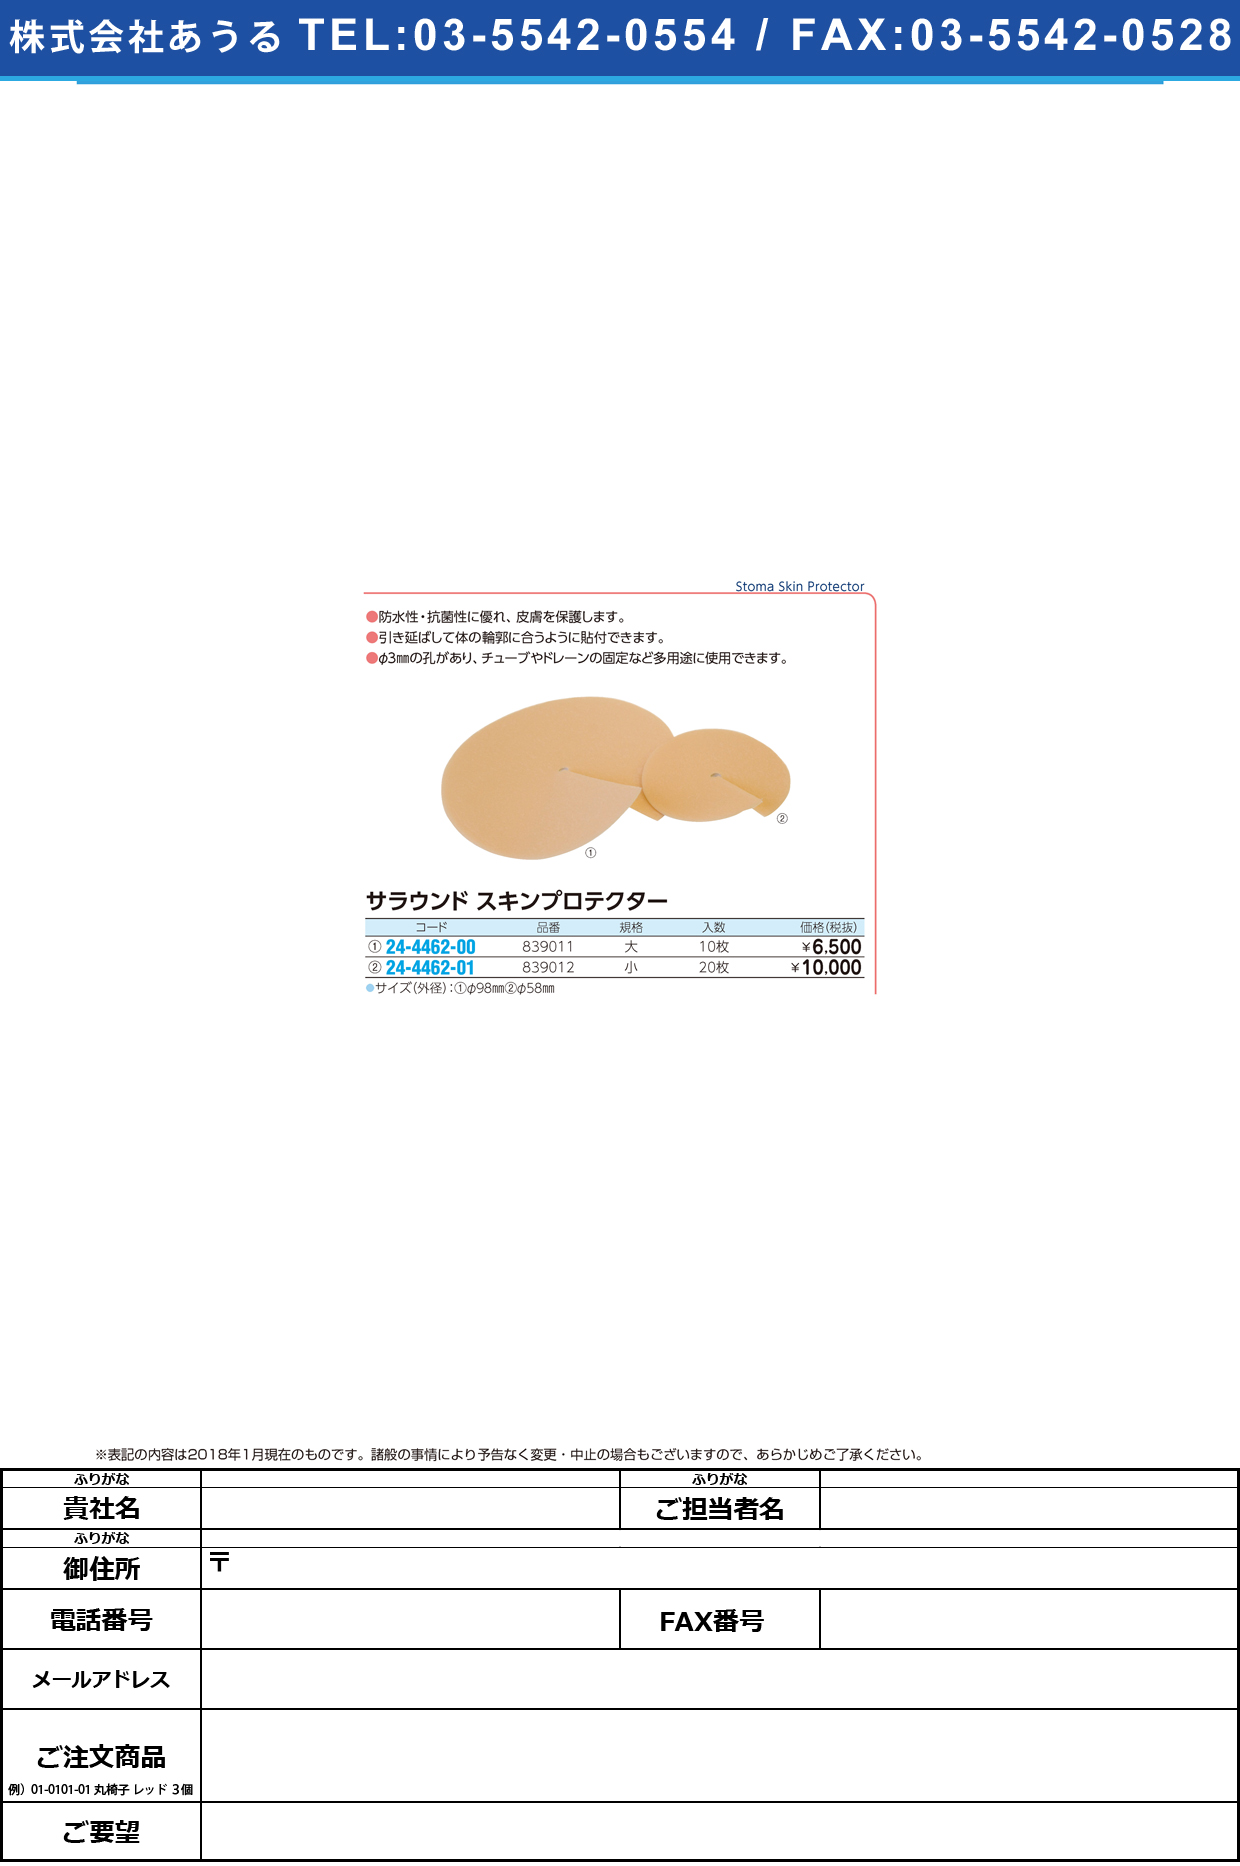 (24-4462-01)サラウンドスキンプロテクター 839012(ｼｮｳ)20ﾏｲ ｻﾗｳﾝﾄﾞｽｷﾝﾌﾟﾛﾃｸﾀｰ【1箱単位】【2018年カタログ商品】